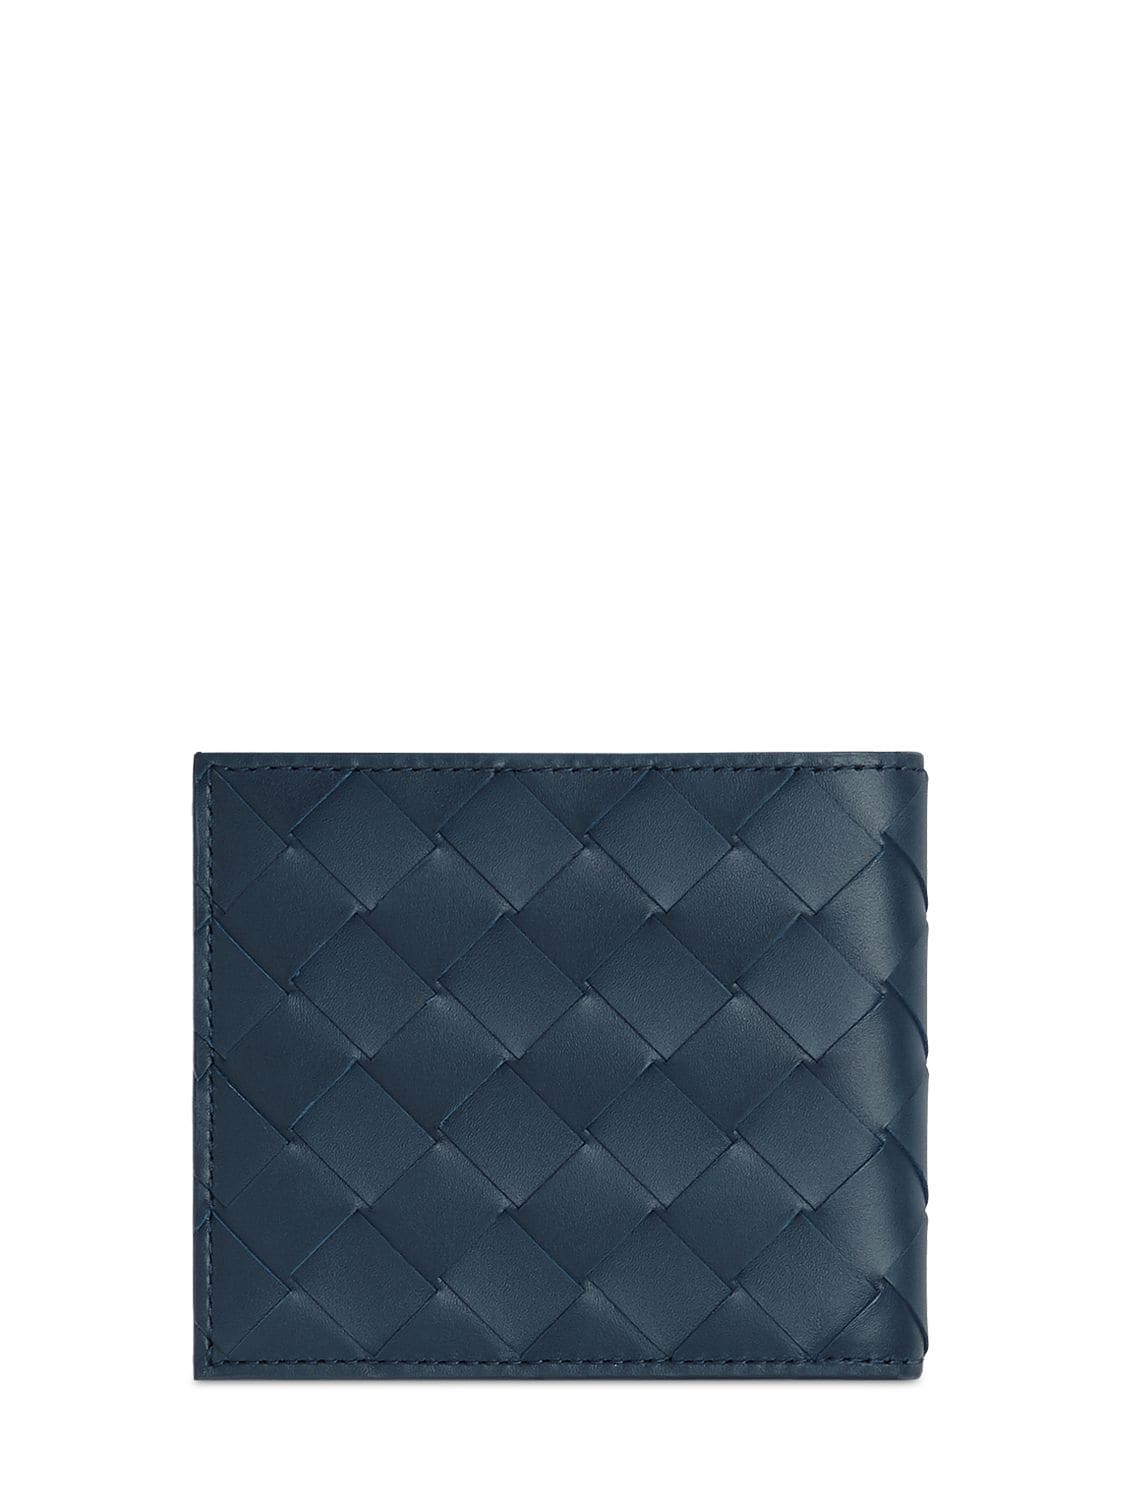 Shop Bottega Veneta Intrecciato Leather Bi-fold Wallet In Dark Blue